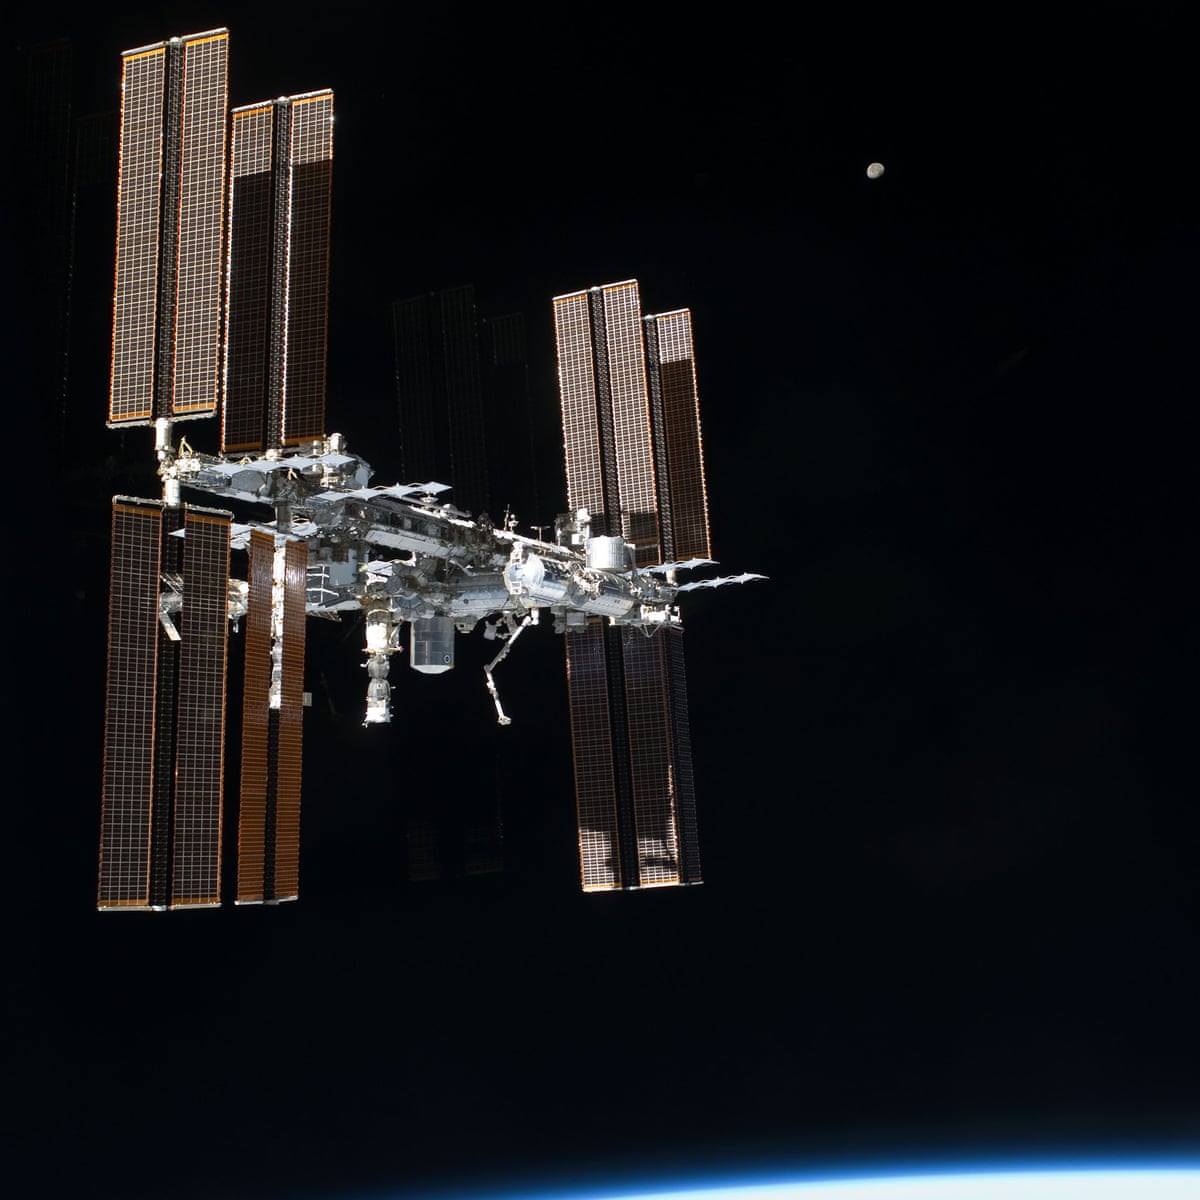 Mali komadić svemirskog otpada oštetio je robotsku ruku na Međunarodnoj svemirskoj postaji (ISS). Izvor: NASA/PA.